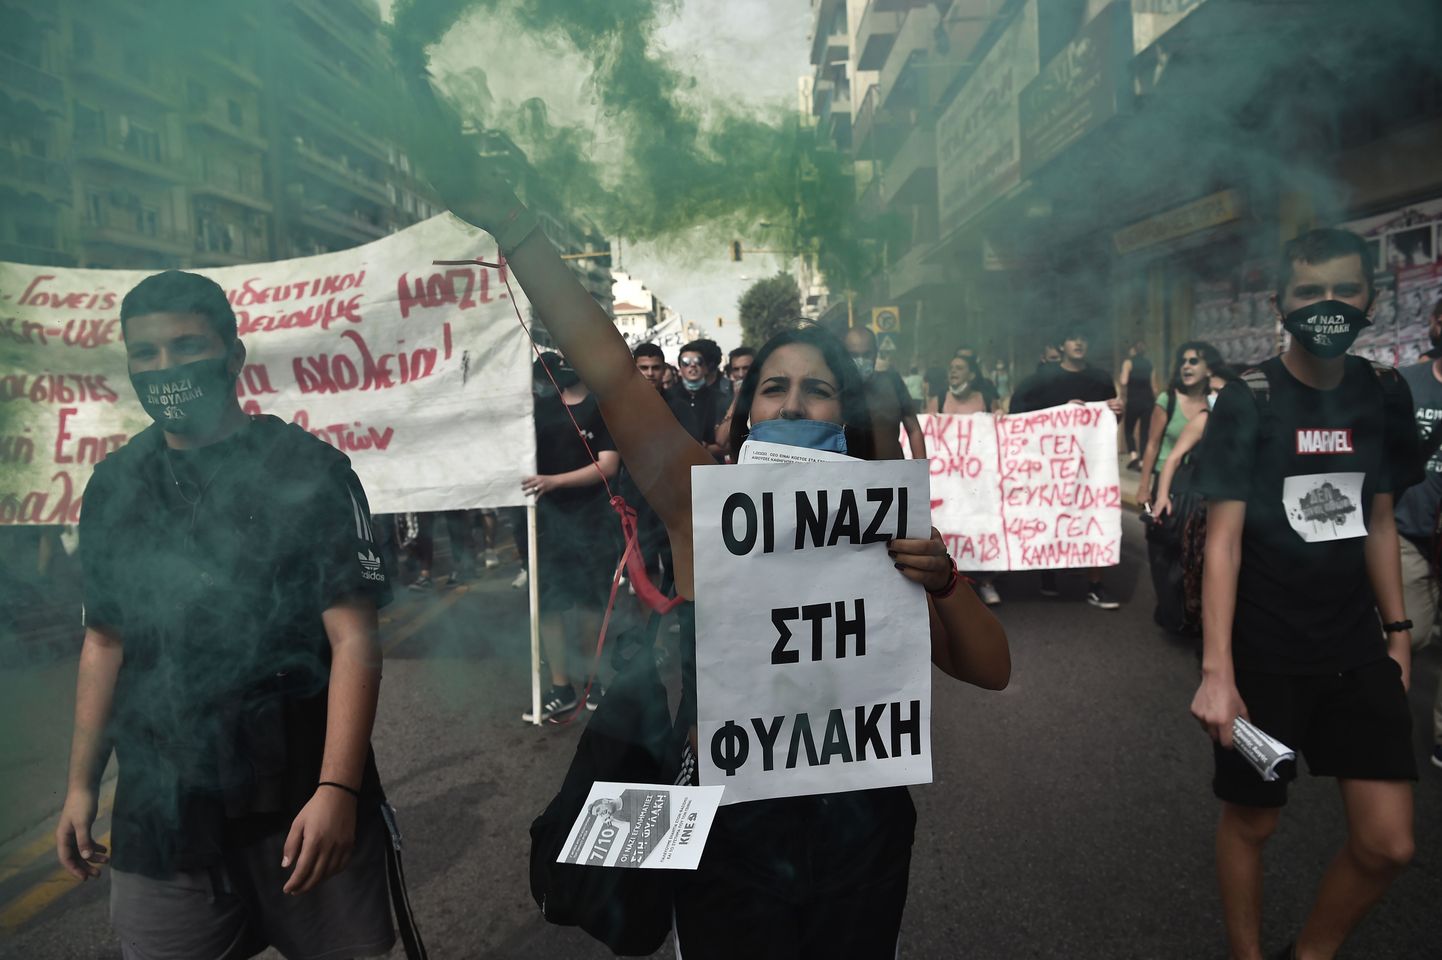 Sel 2020. aasta 7. oktoobril Kreeka pealinnas Ateenas tehtud fotol võib näha meeleavaldajat, kelle plakatil on kiri "Natsid vanglasse!". Samal päeval kuulutas kohus uusnatside partei Kuldne Koidik kuritegelikuks ning paljud selle juhtliikmed mõisteti süüdi ja saadeti pikaks ajaks vanglatrellide taha. Tegemist oli Kreeka poliitilise lähiajaloo ühe tähtsama kohtuprotsessiga.